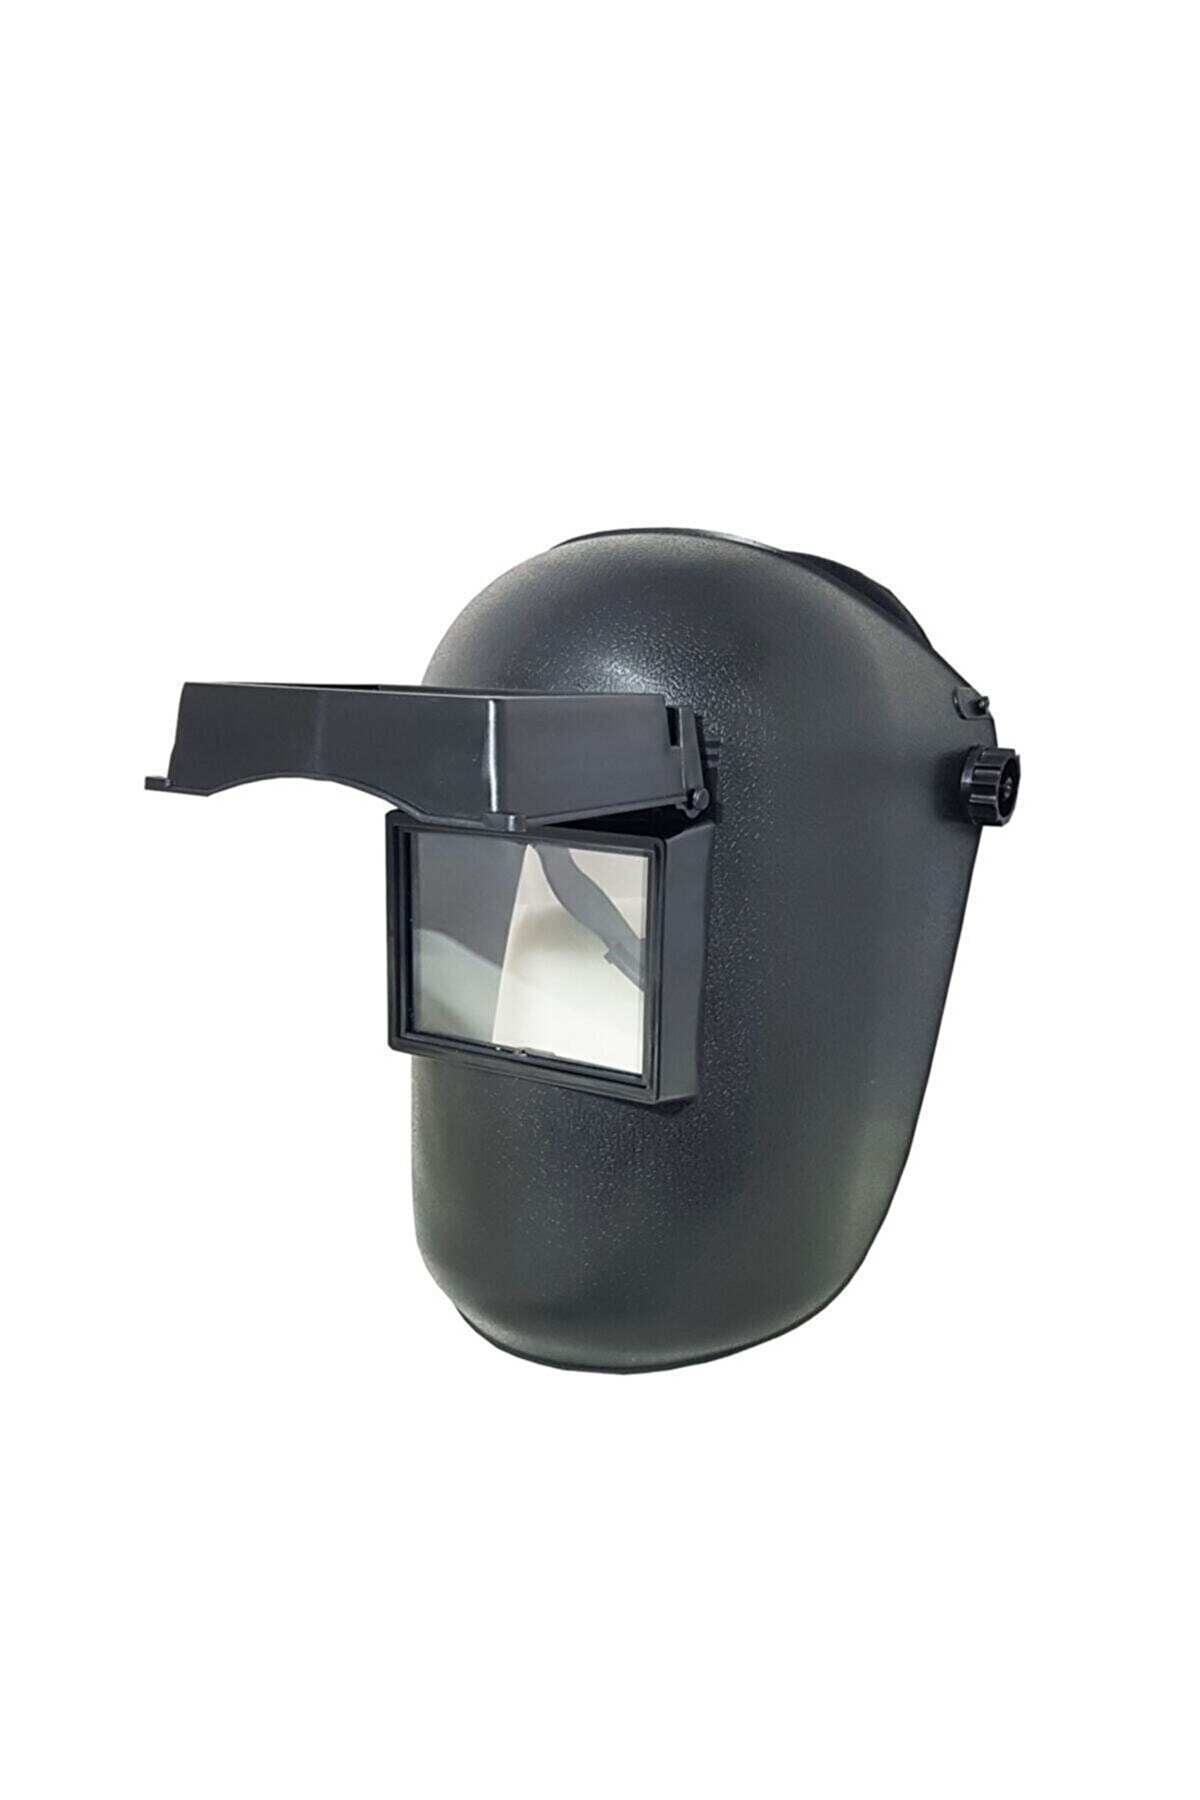 maskelit Kaynak Maskesi Başlıklı Çapak Gözlüğü Başlıklı Kaynak Makinası Cam Hediyeli